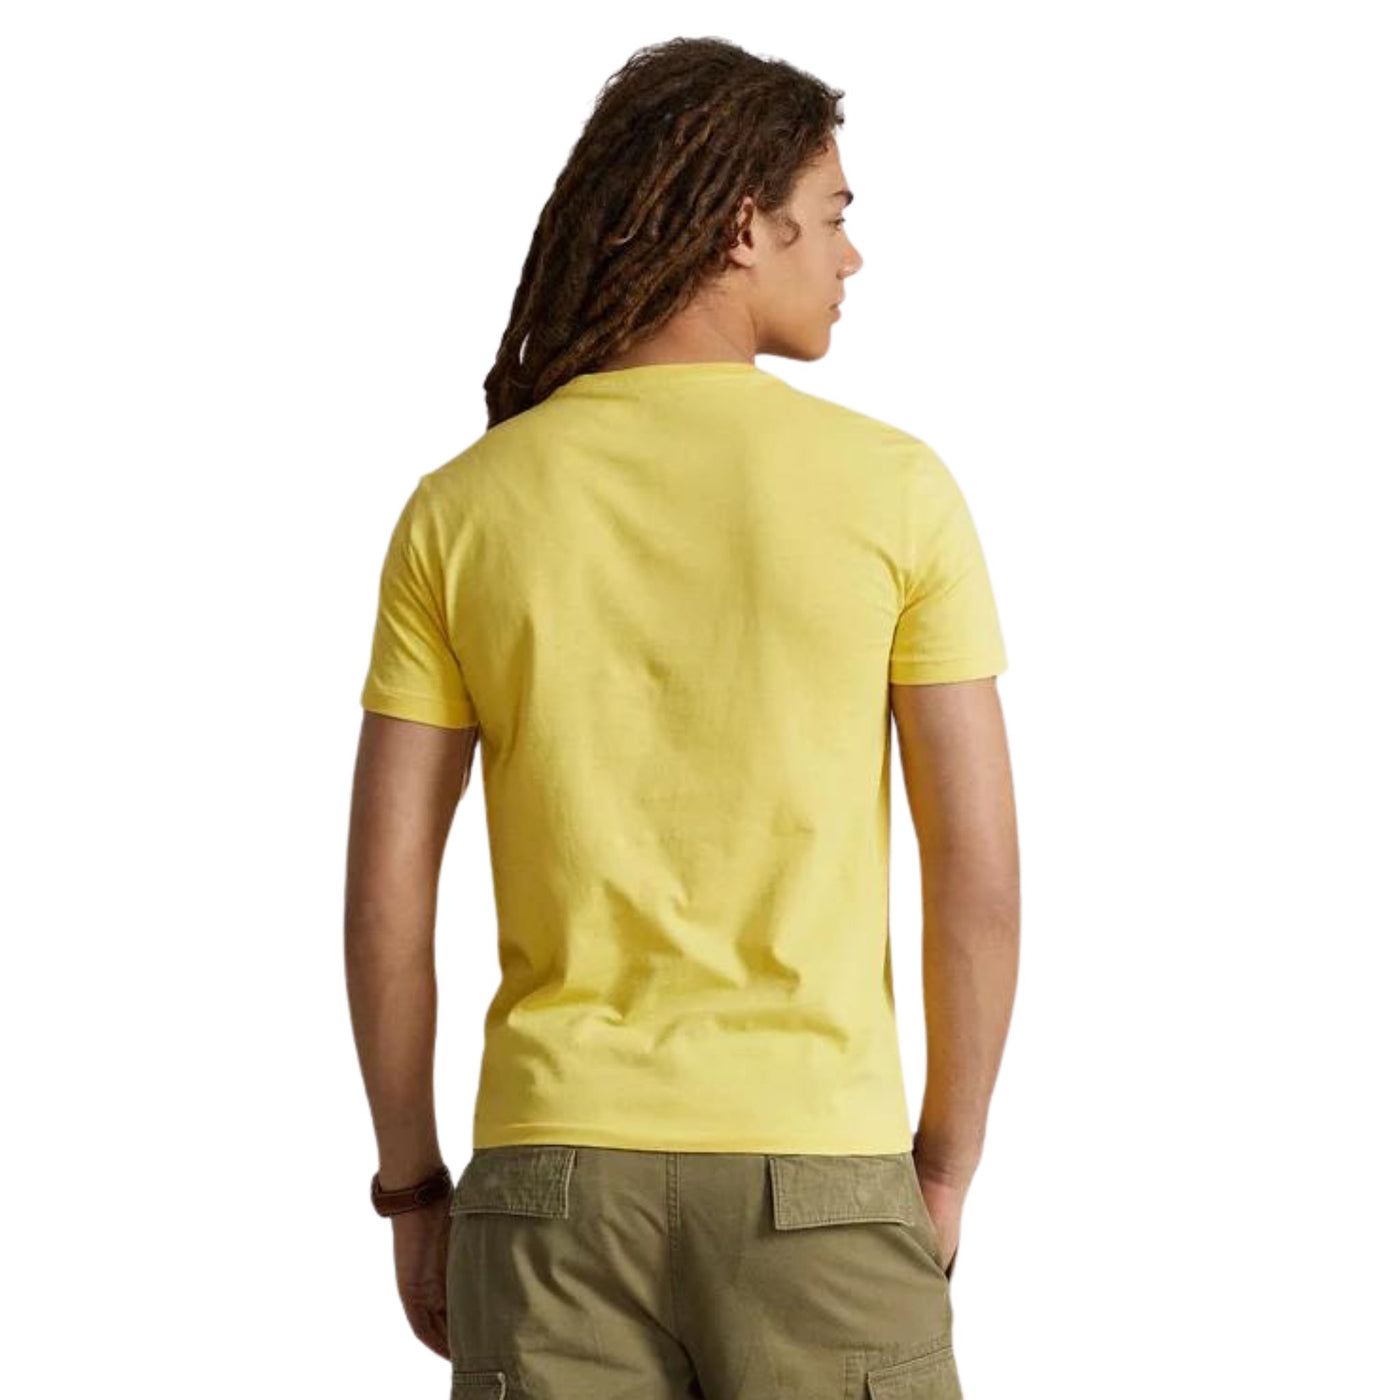 Retro modello con T-shirt in cotone con maniche corte e girocollo e iconico cavallino sul petto